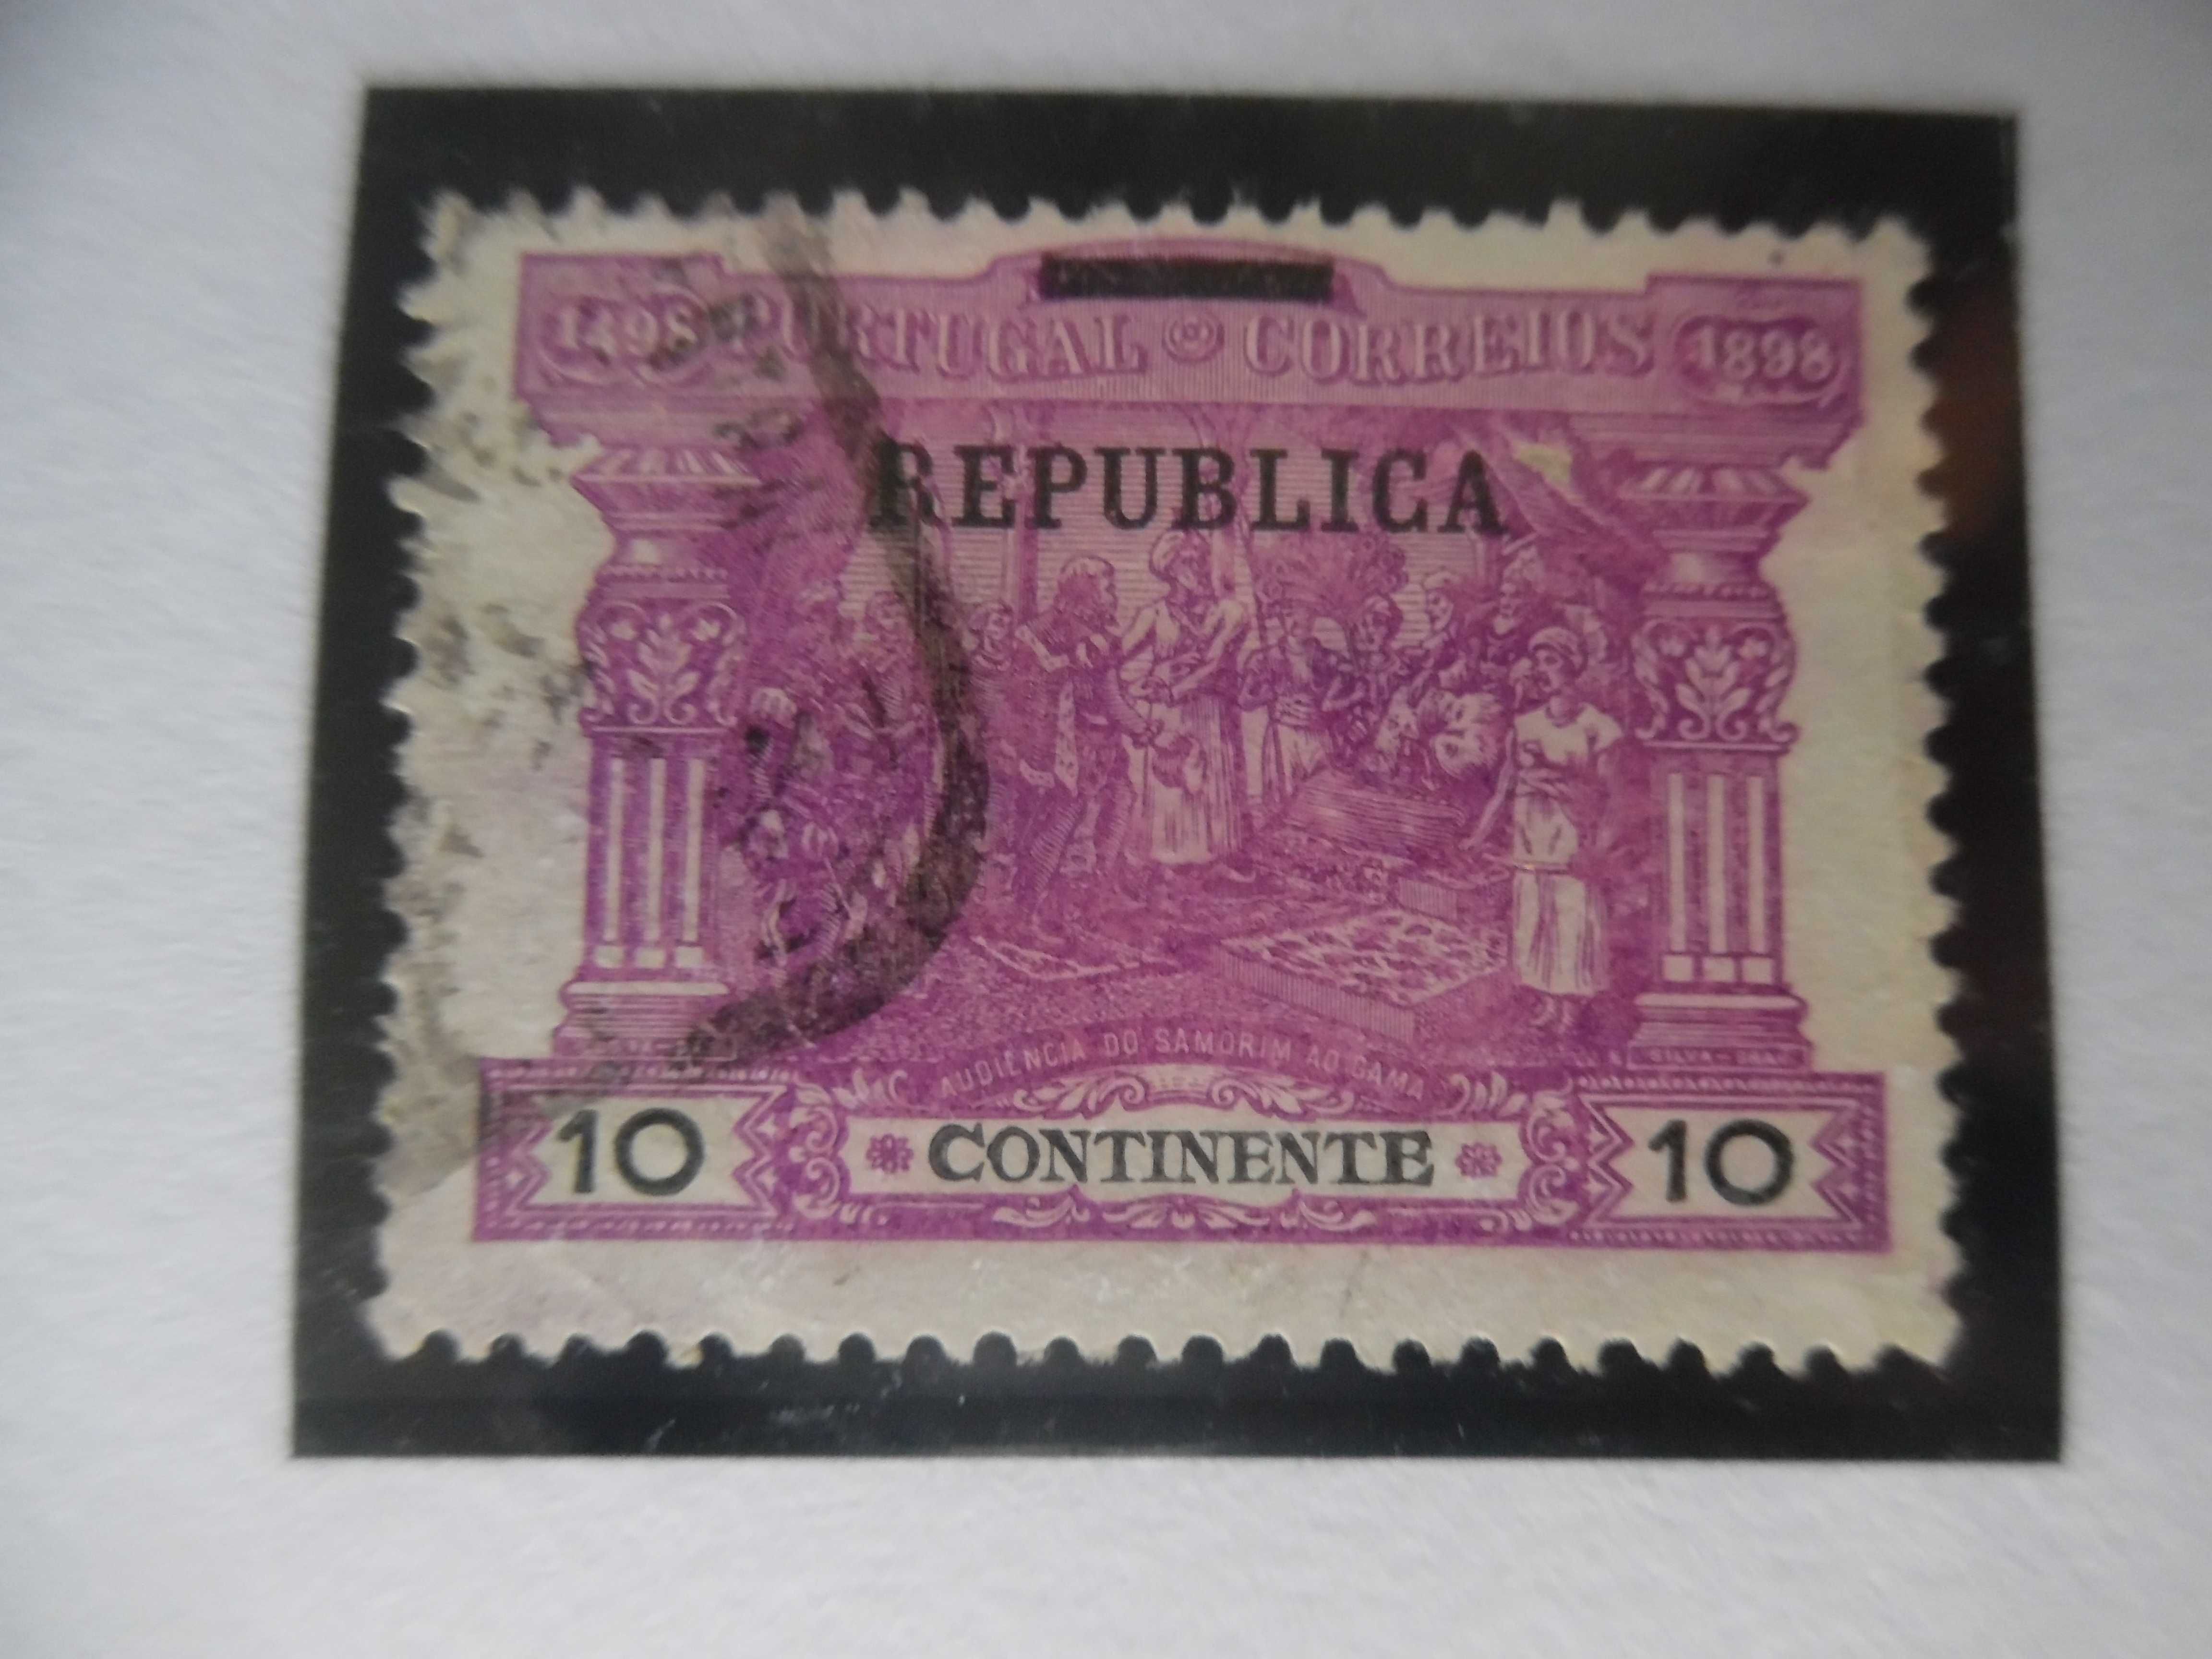 Selos Portugal 1911-Porteado Continente c/Sobrecarga lote